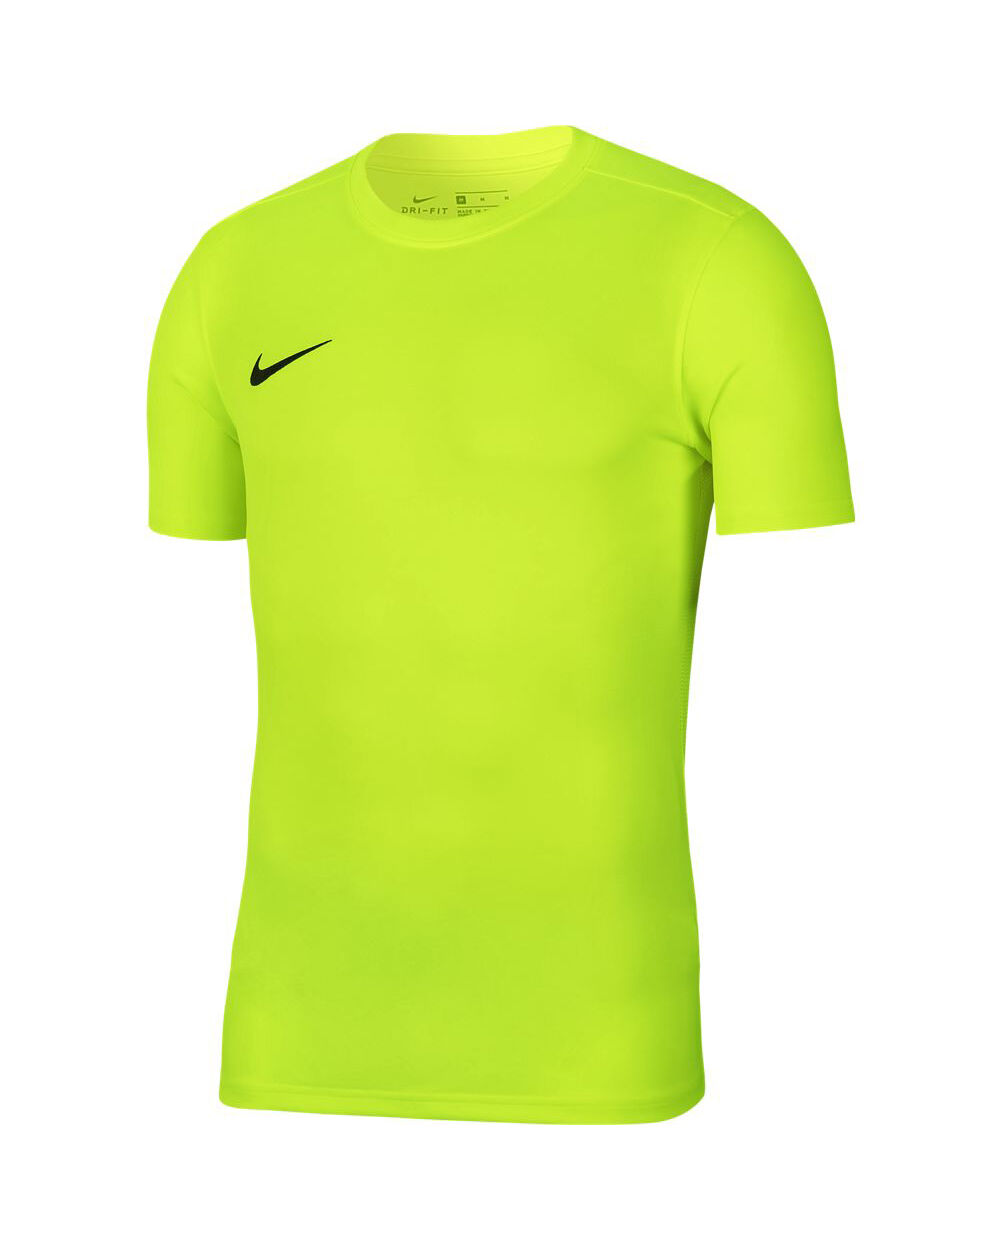 Nike Maglia Park VII Giallo Fluorescente Bambino BV6741-702 L